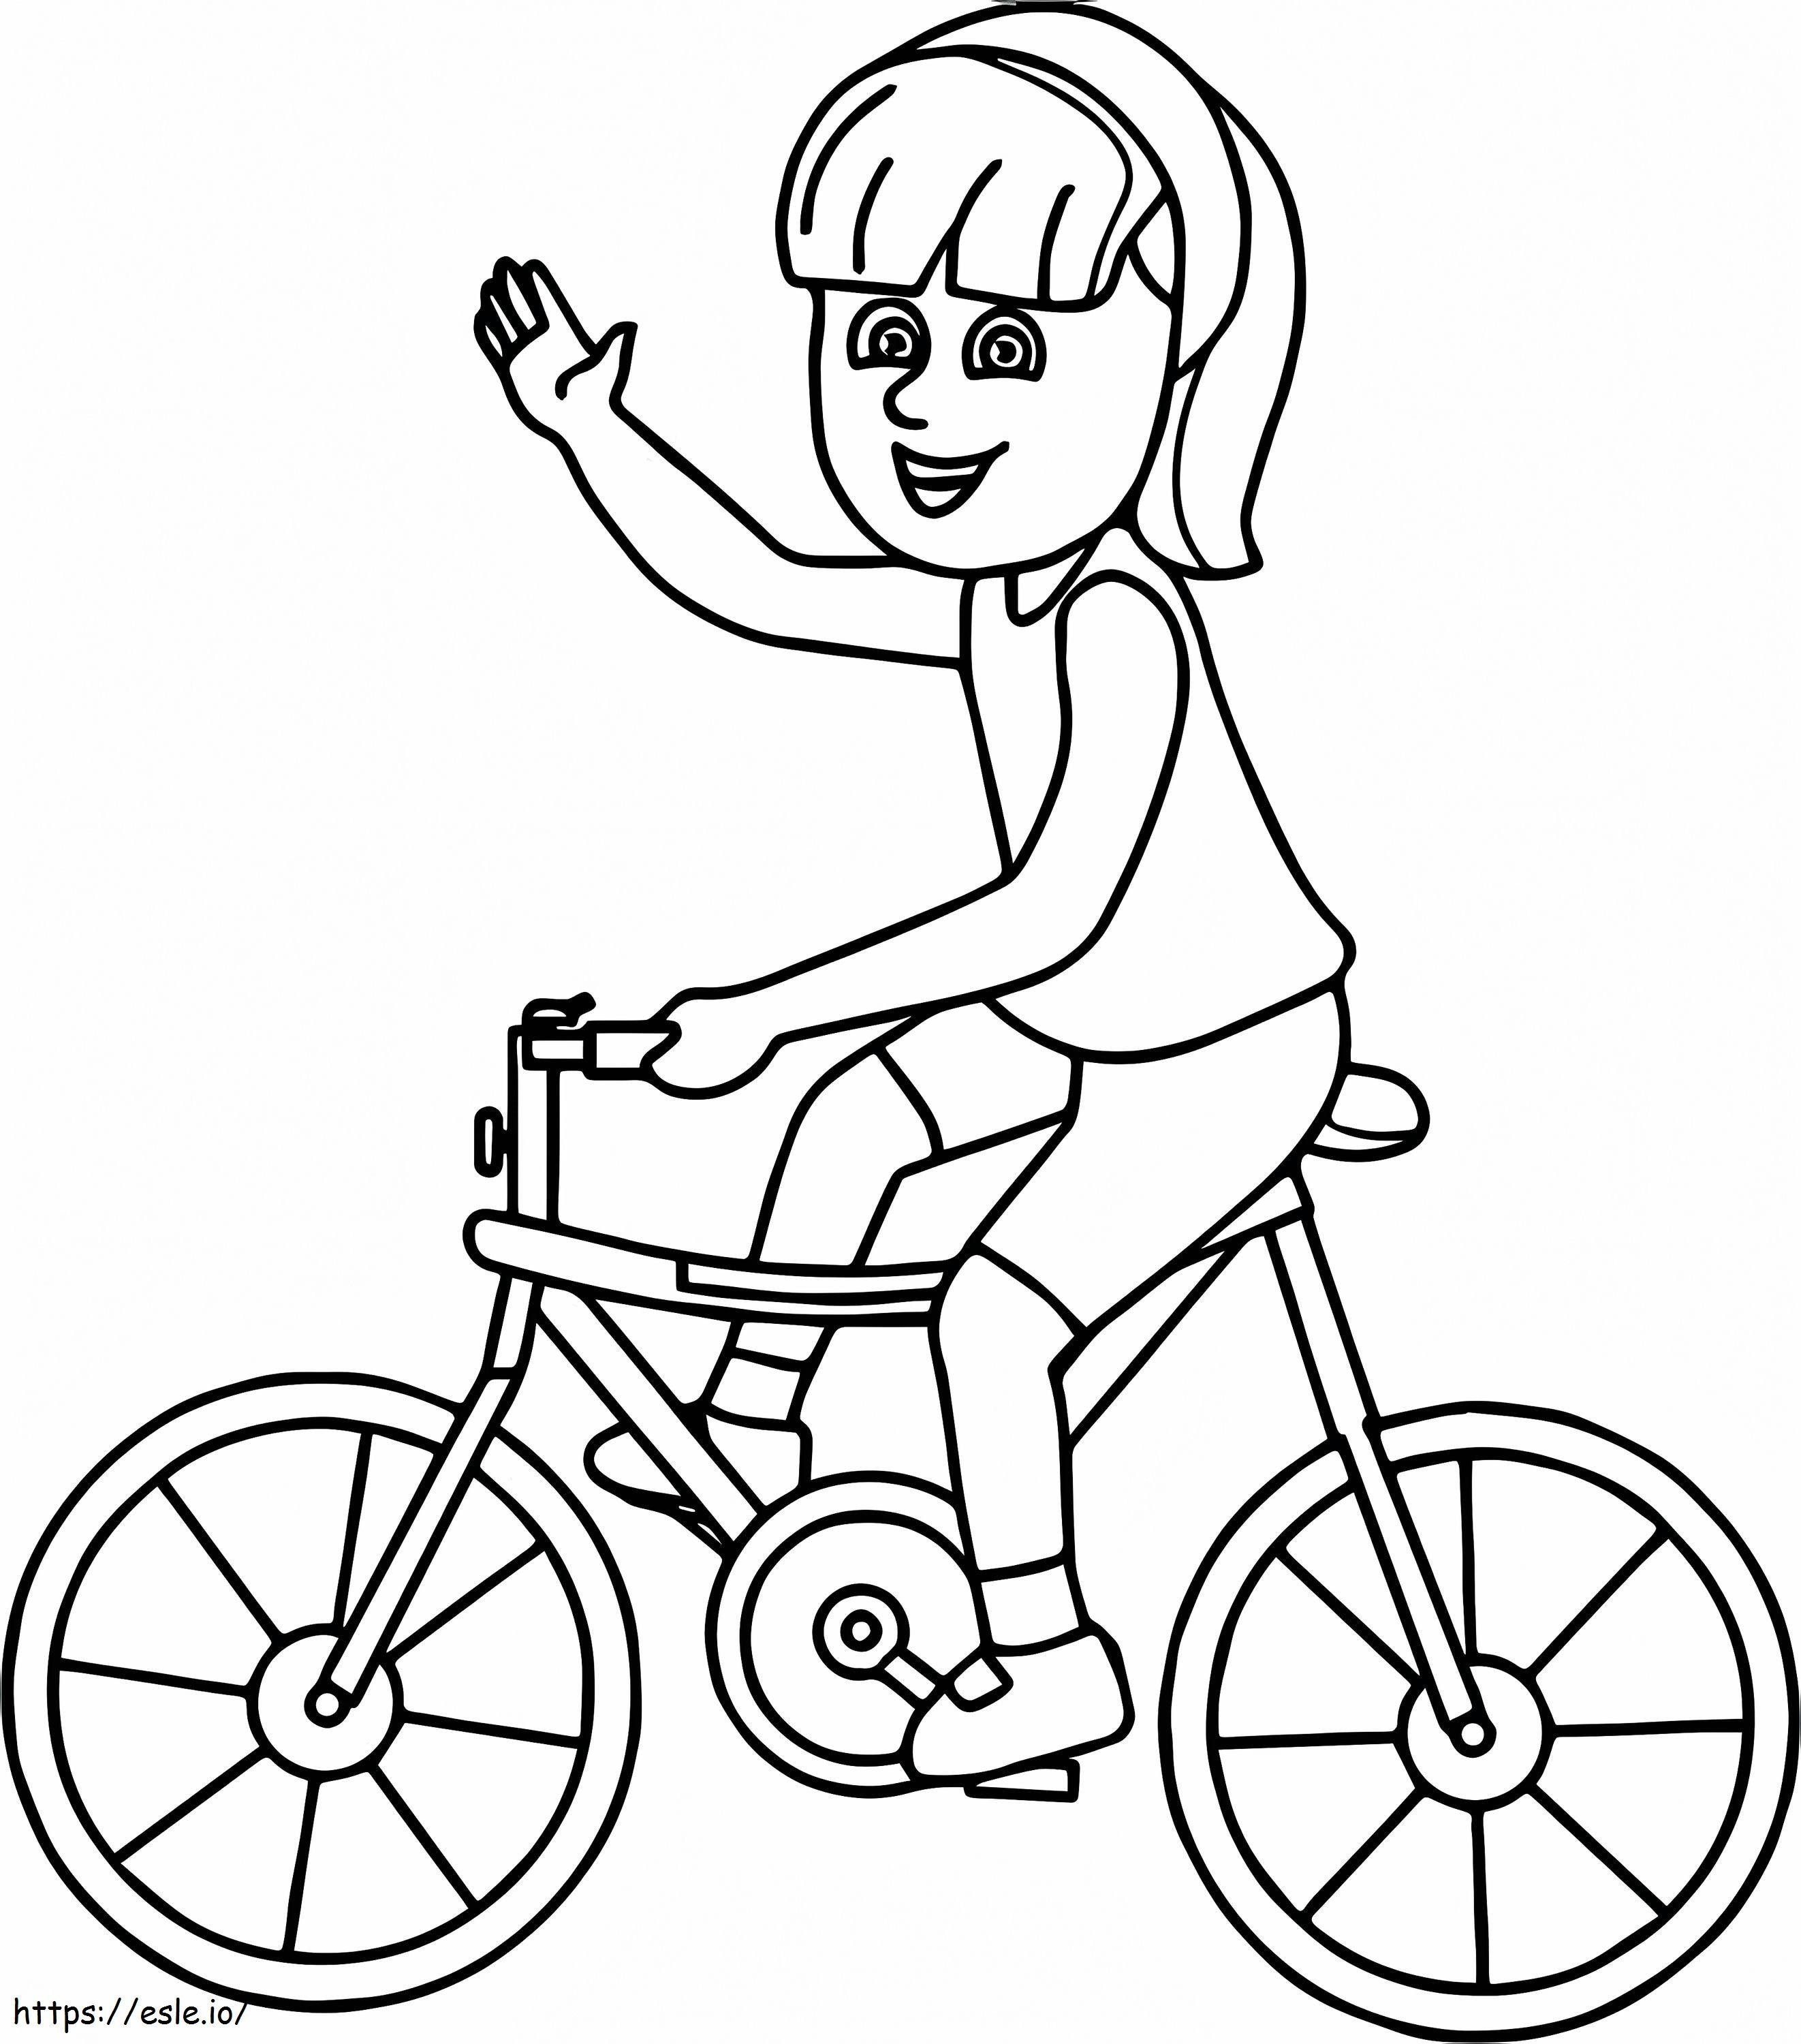  Ragazza in bicicletta sulla pagina della bicicletta da colorare